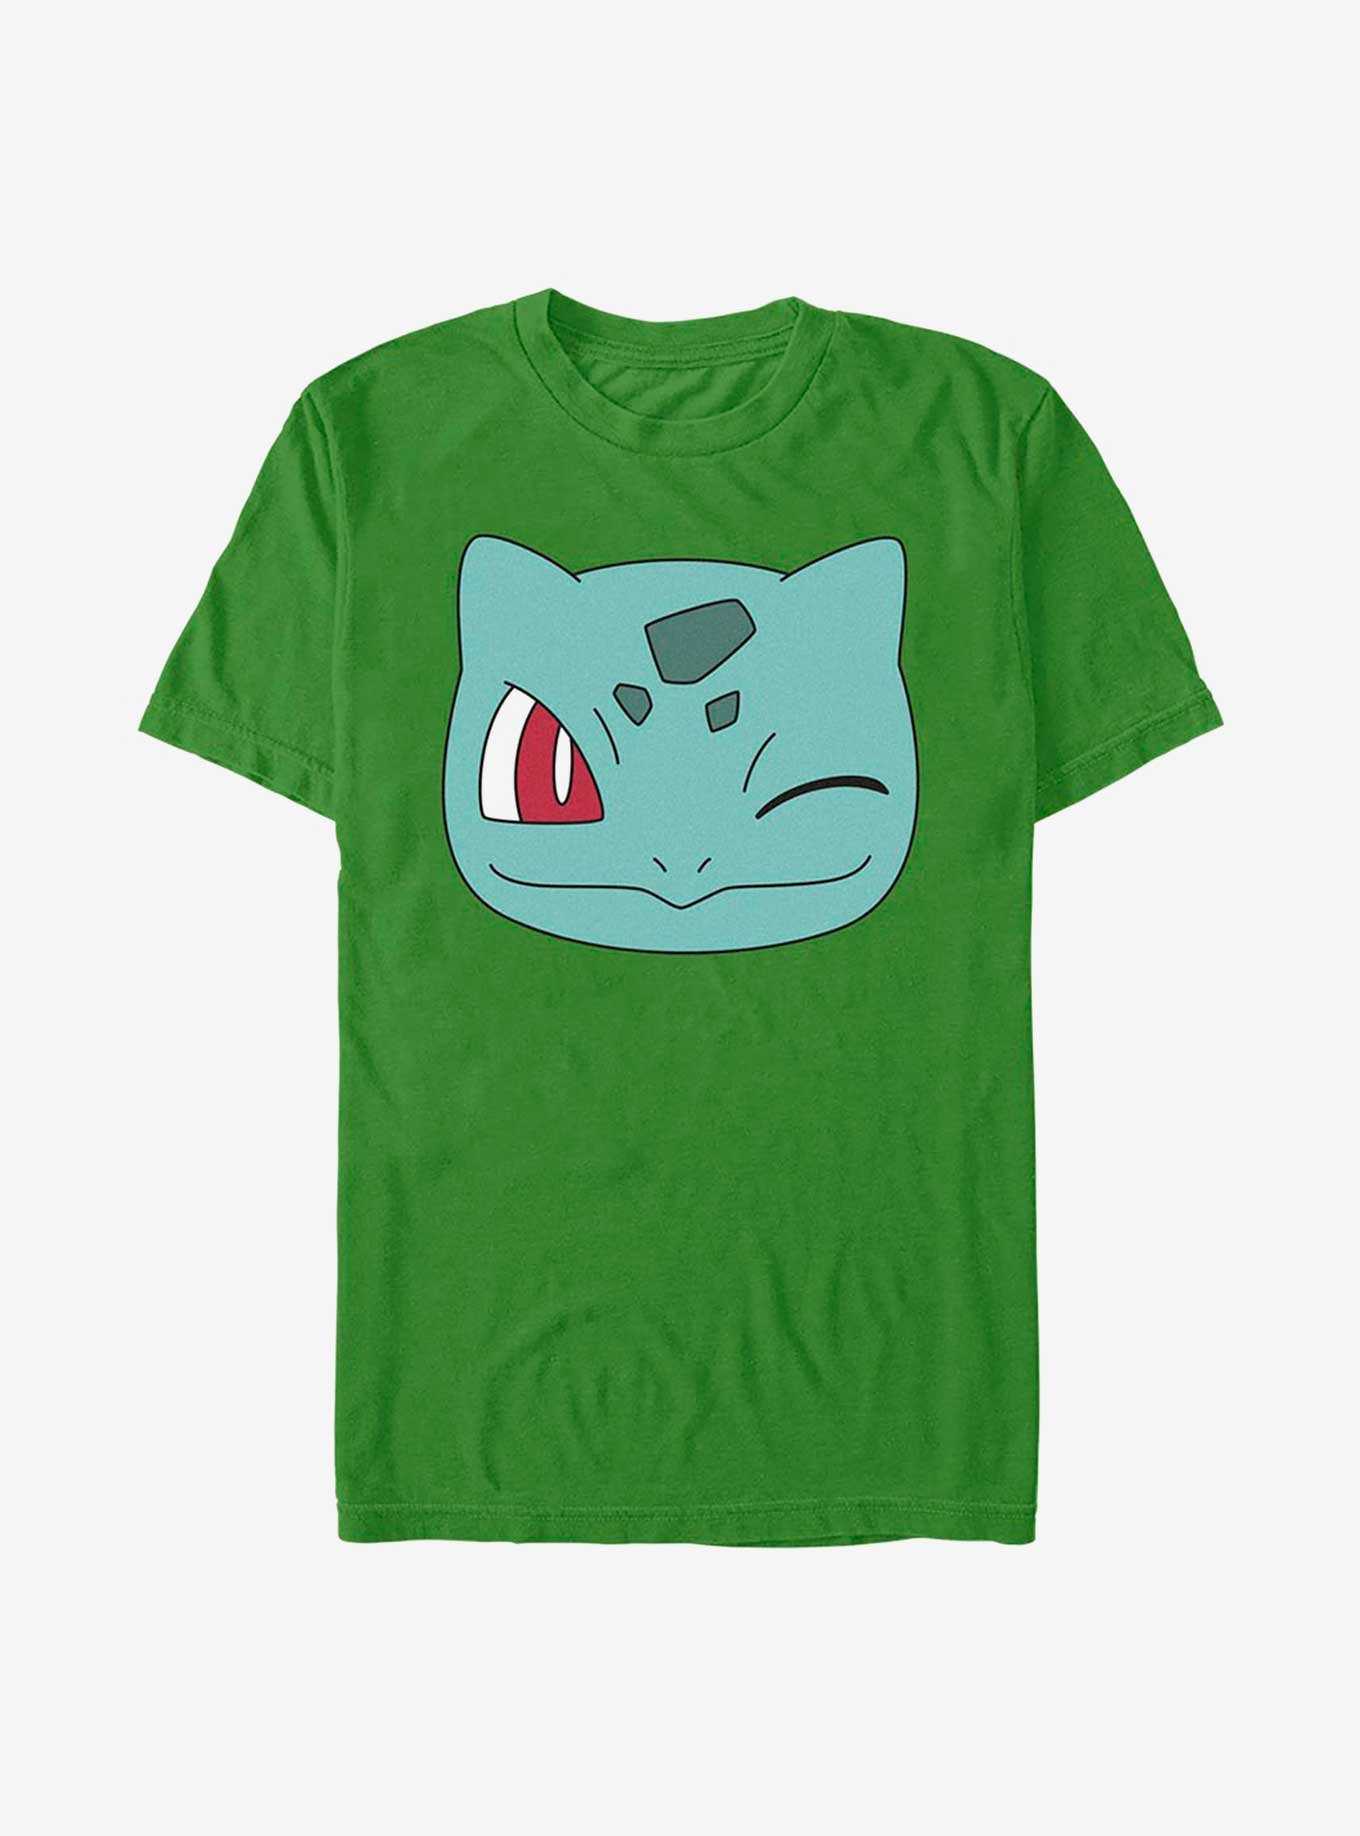 Pokemon Bulbasaur Face T-Shirt, , hi-res